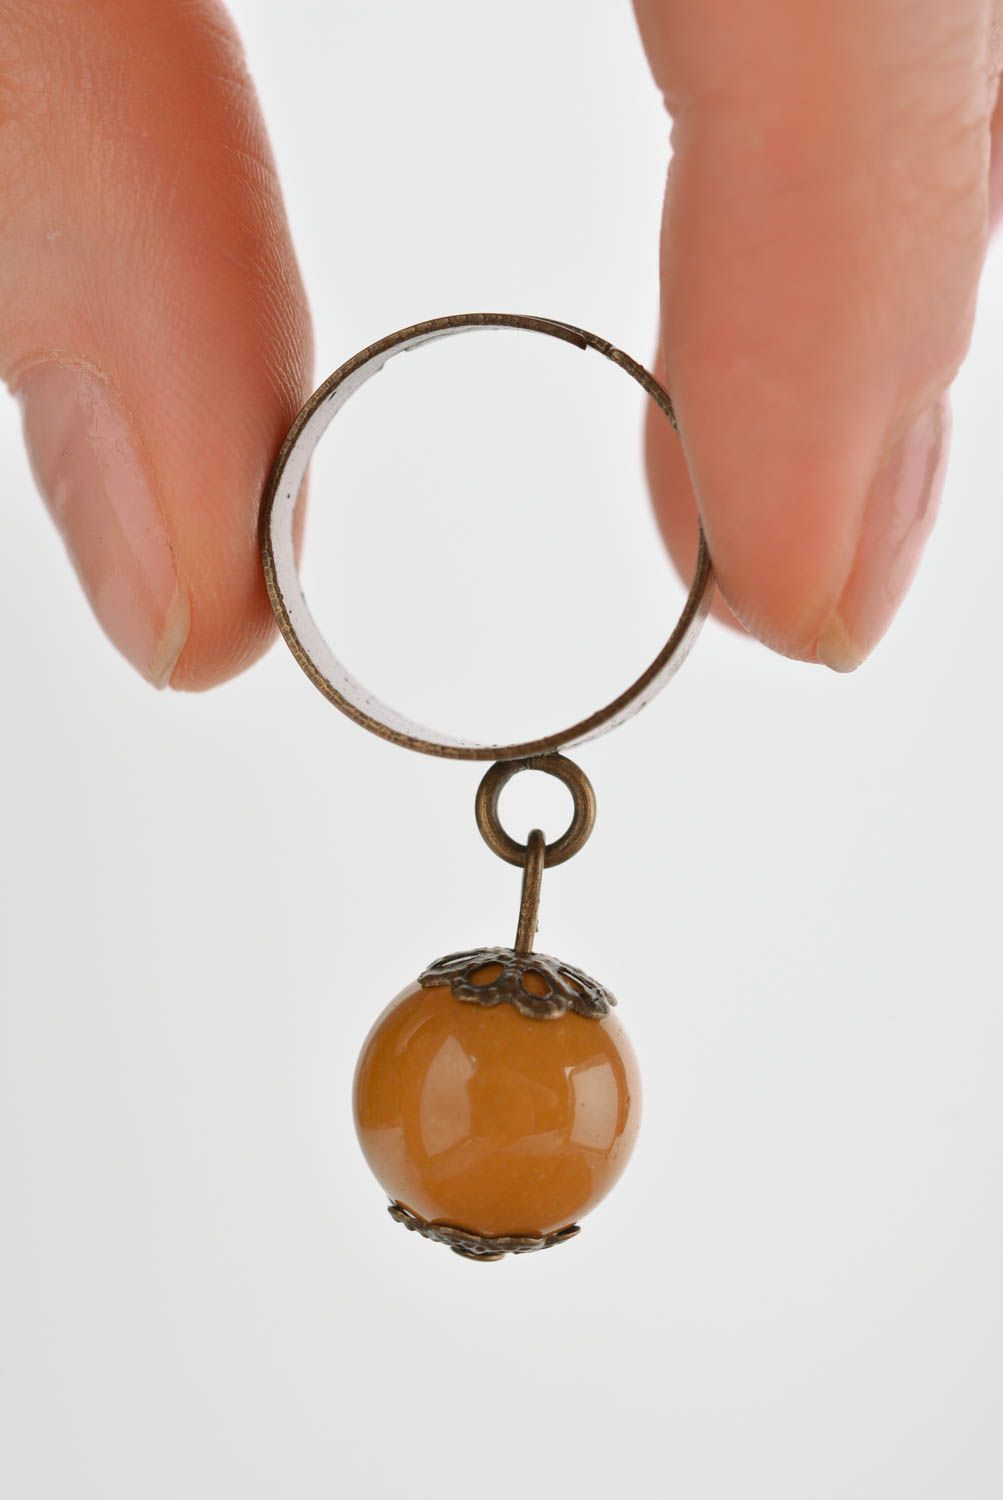 Кольцо ручной работы кольцо с бусиной горчичного цвета металлическое украшение фото 4